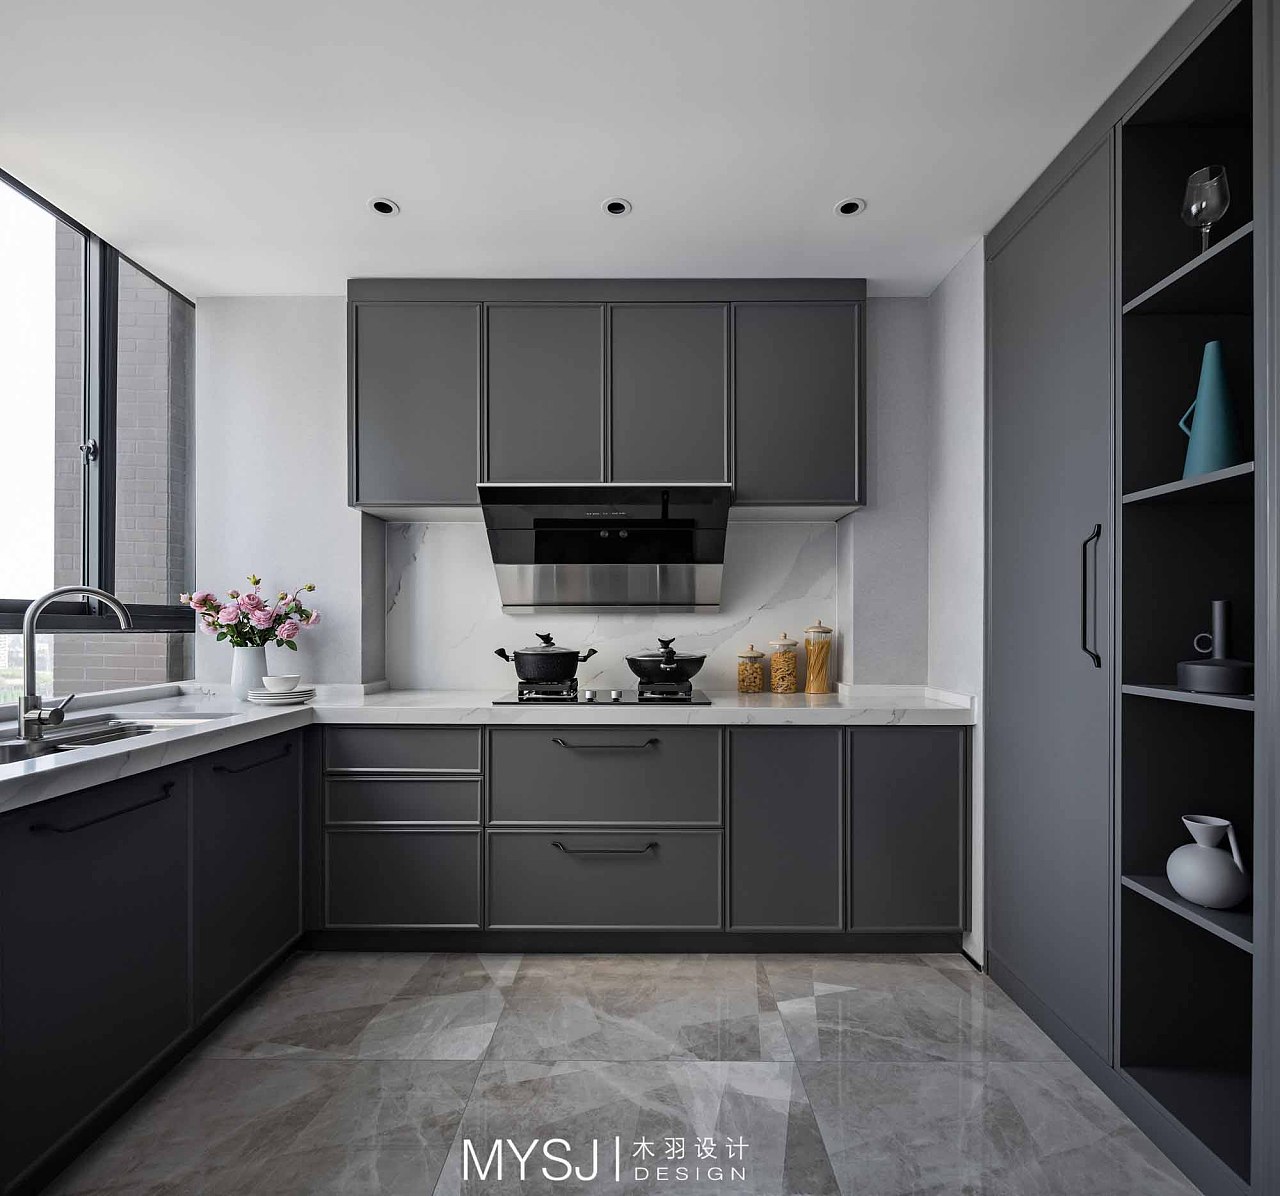 厨房深灰色的橱柜搭配大理石纹地砖,干净整洁透亮,让人更有大展厨艺的